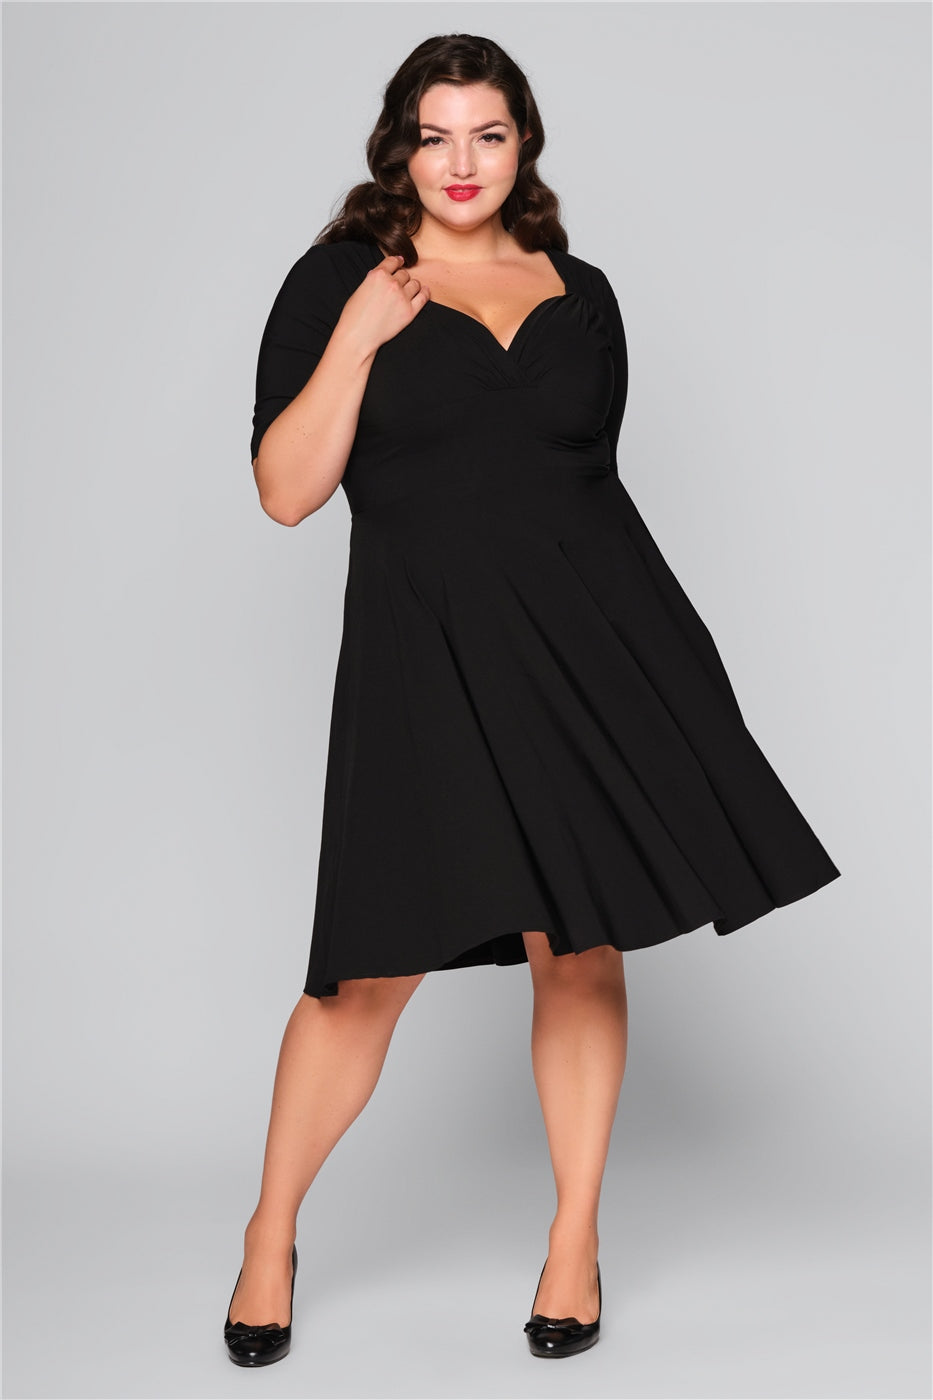 Brunette curvy model swishing her mid length black dress